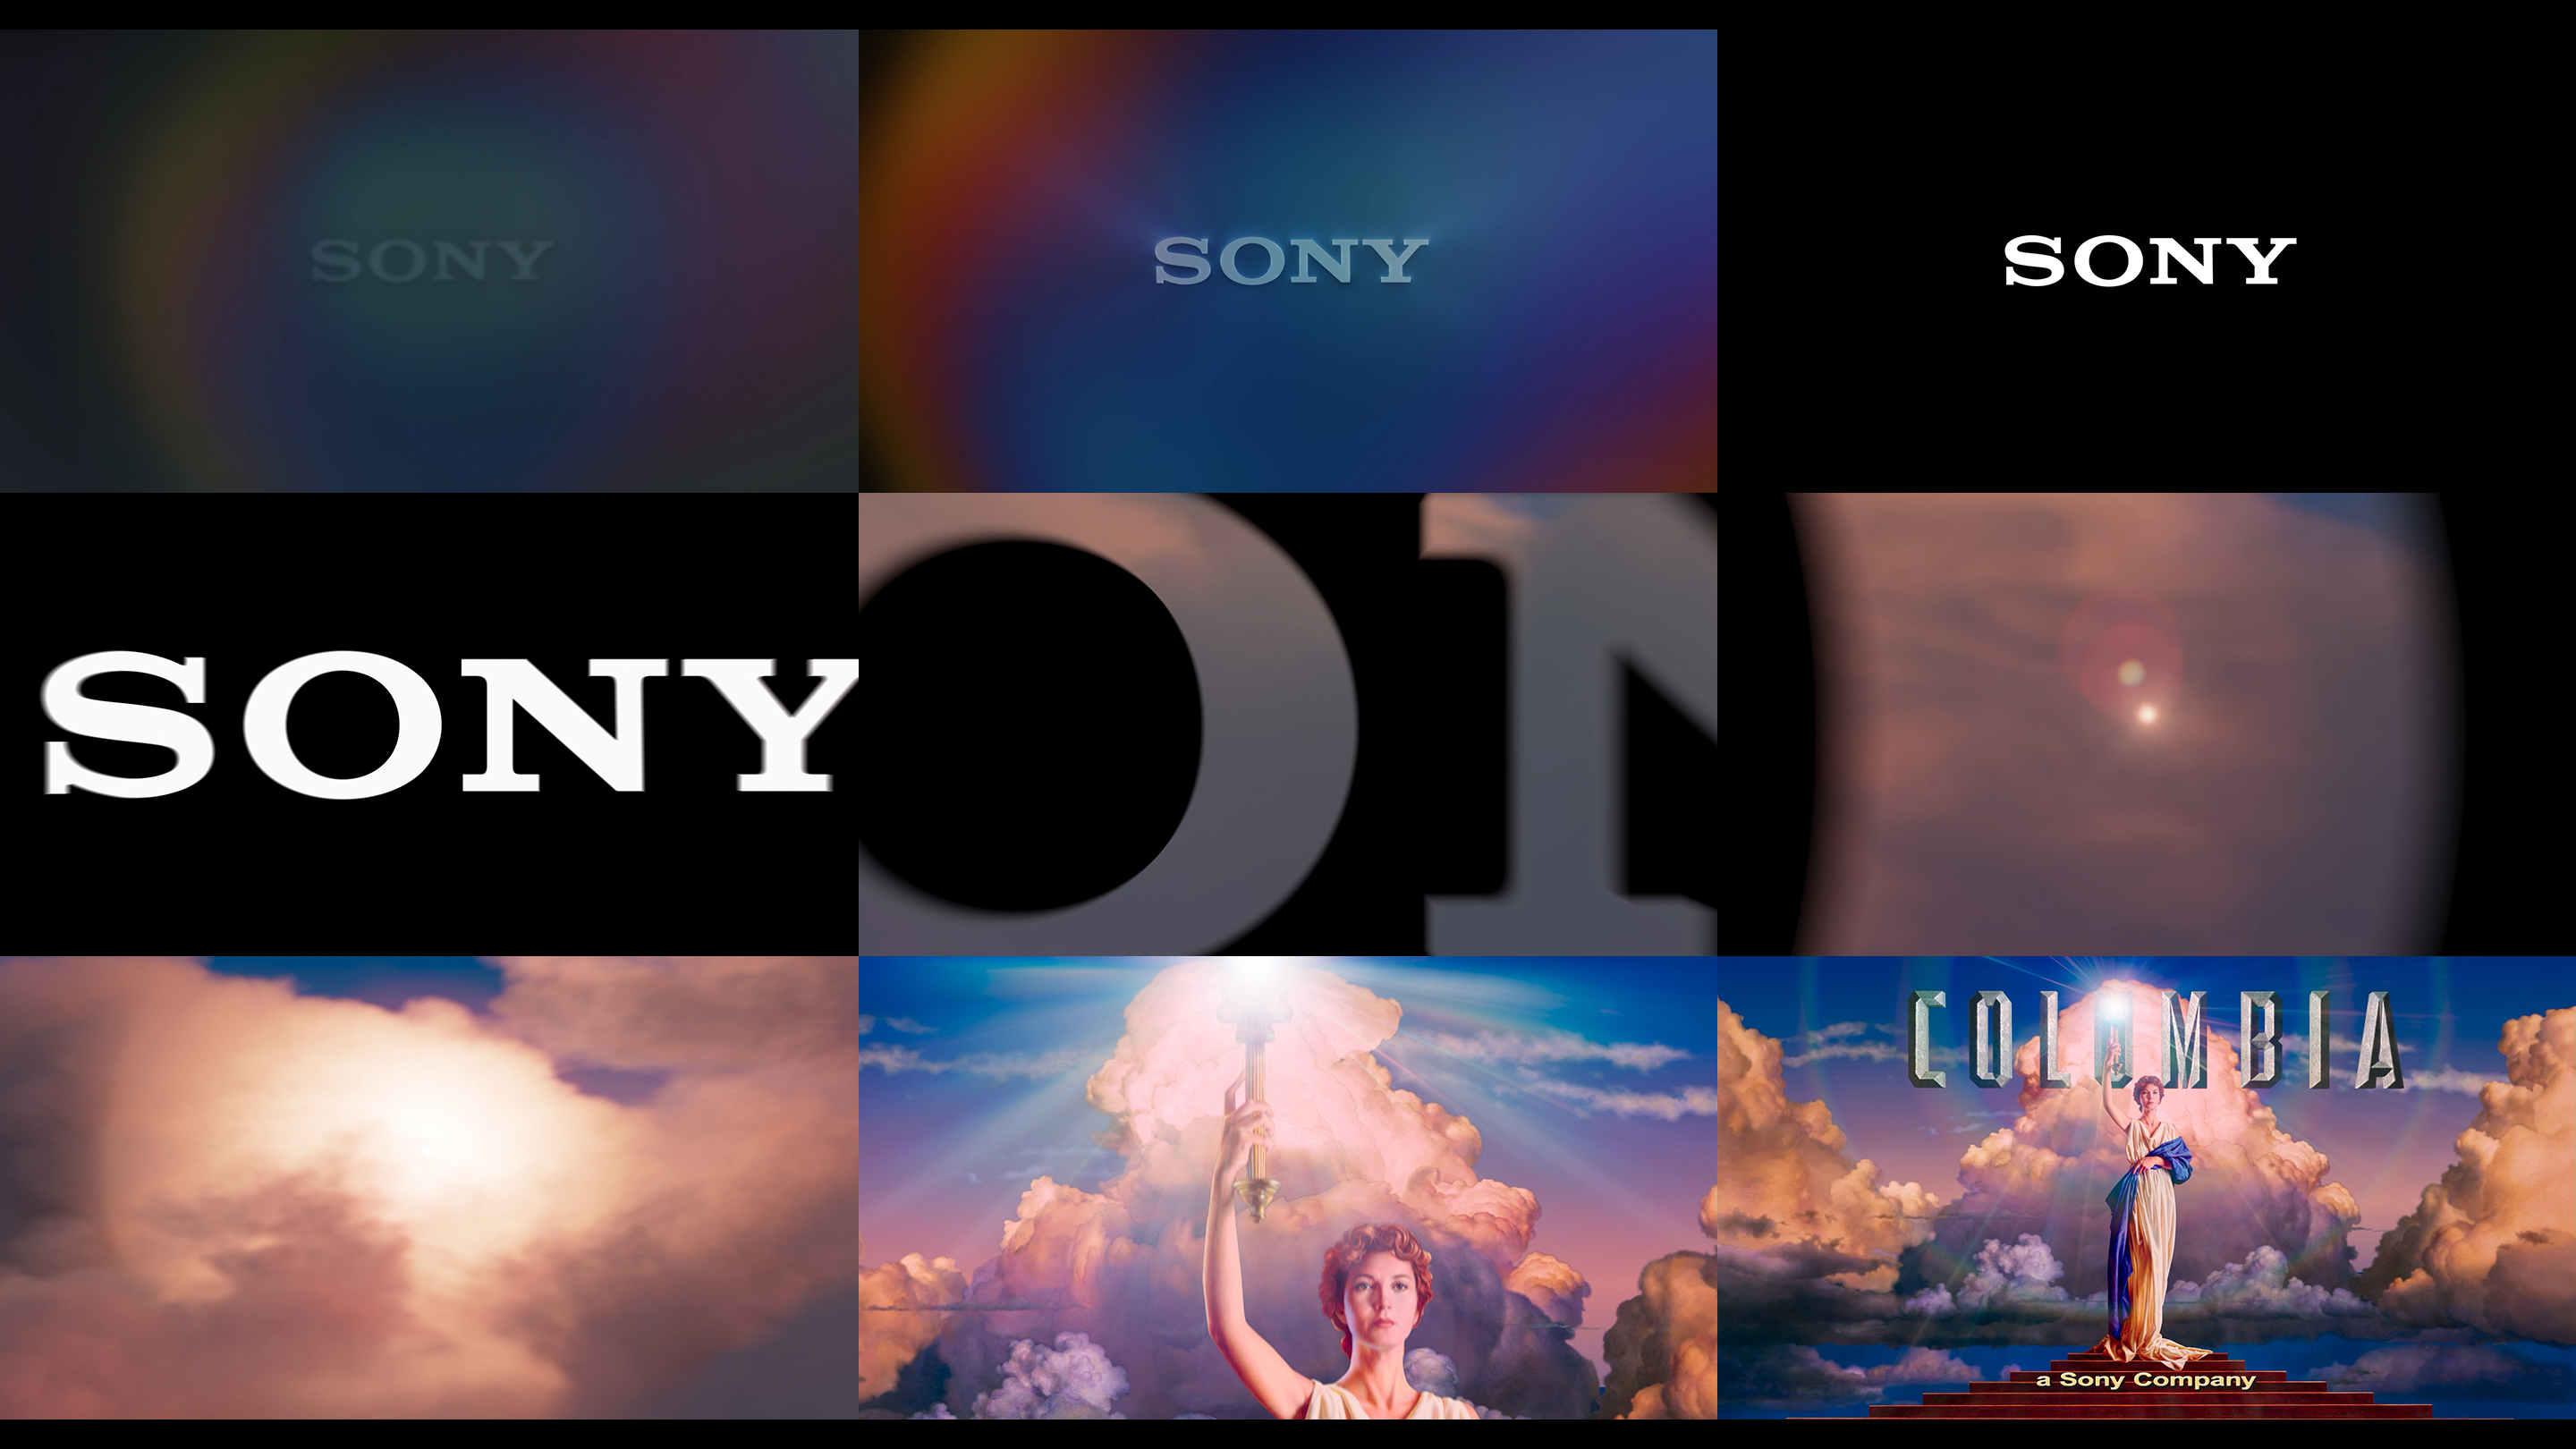 Sony’s Motion Logo